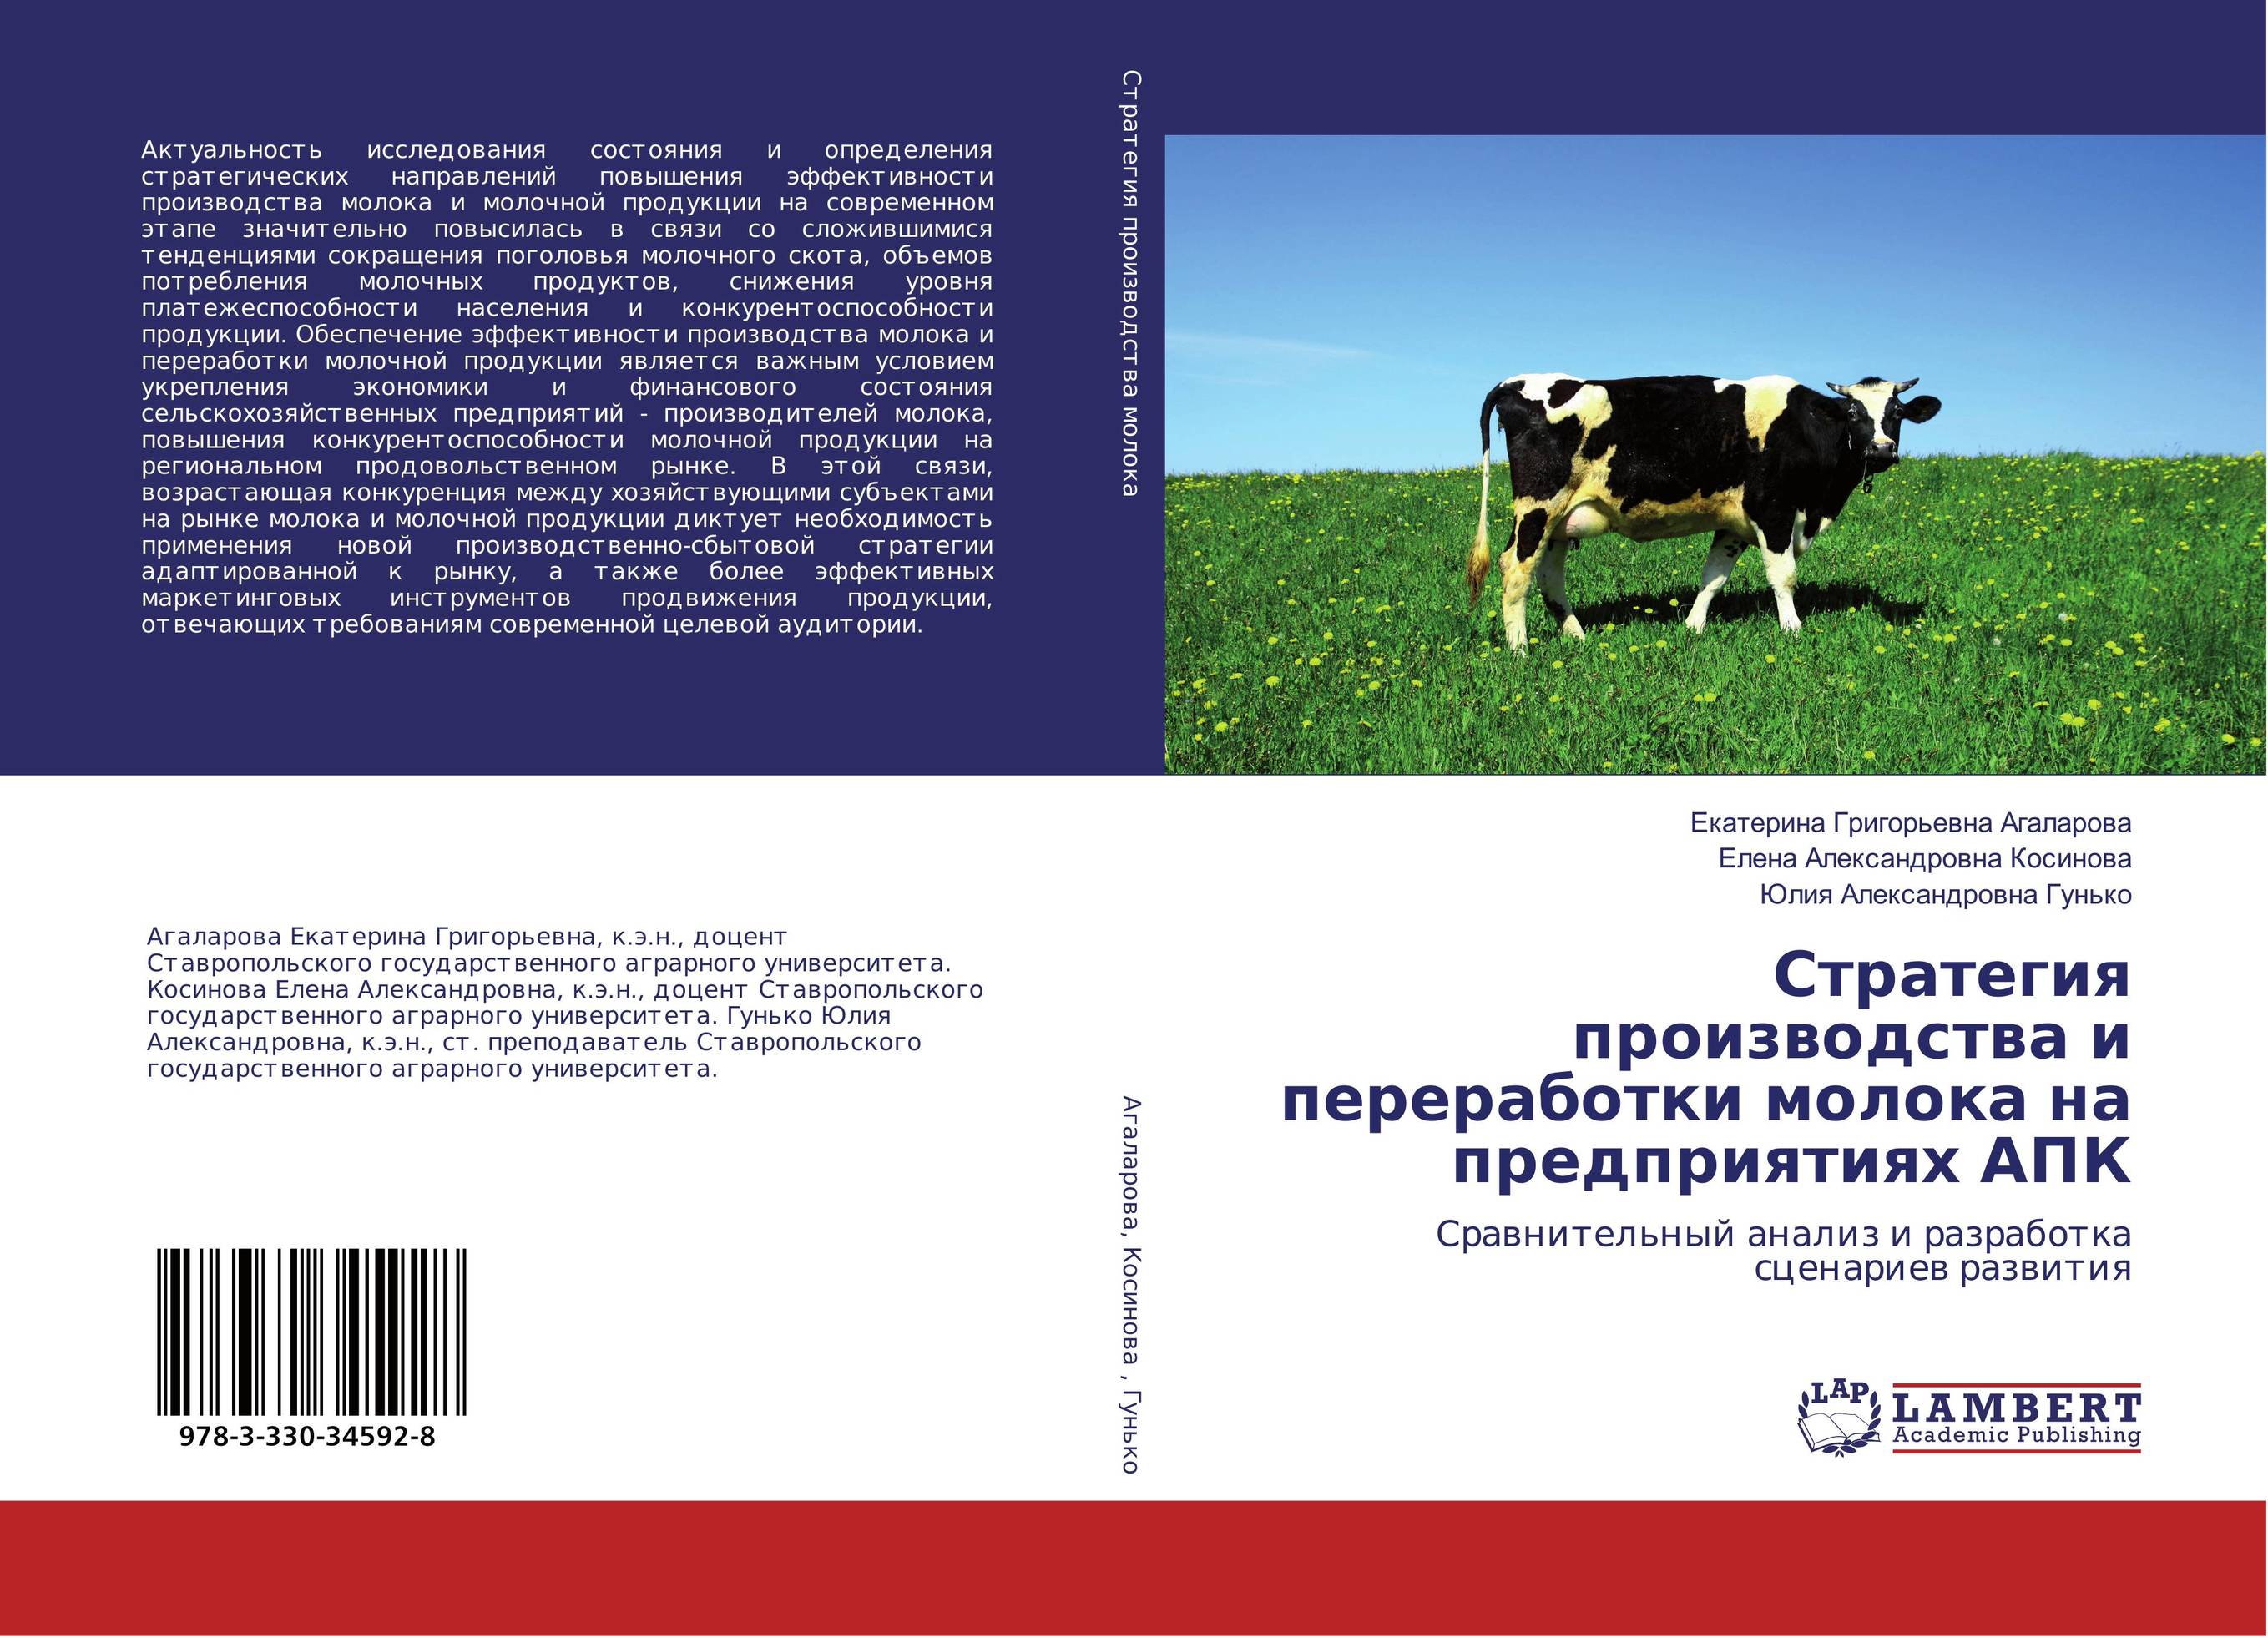 
        Стратегия производства и переработки молока на предприятиях АПК. Сравнительный анализ и разработка сценариев развития.
      